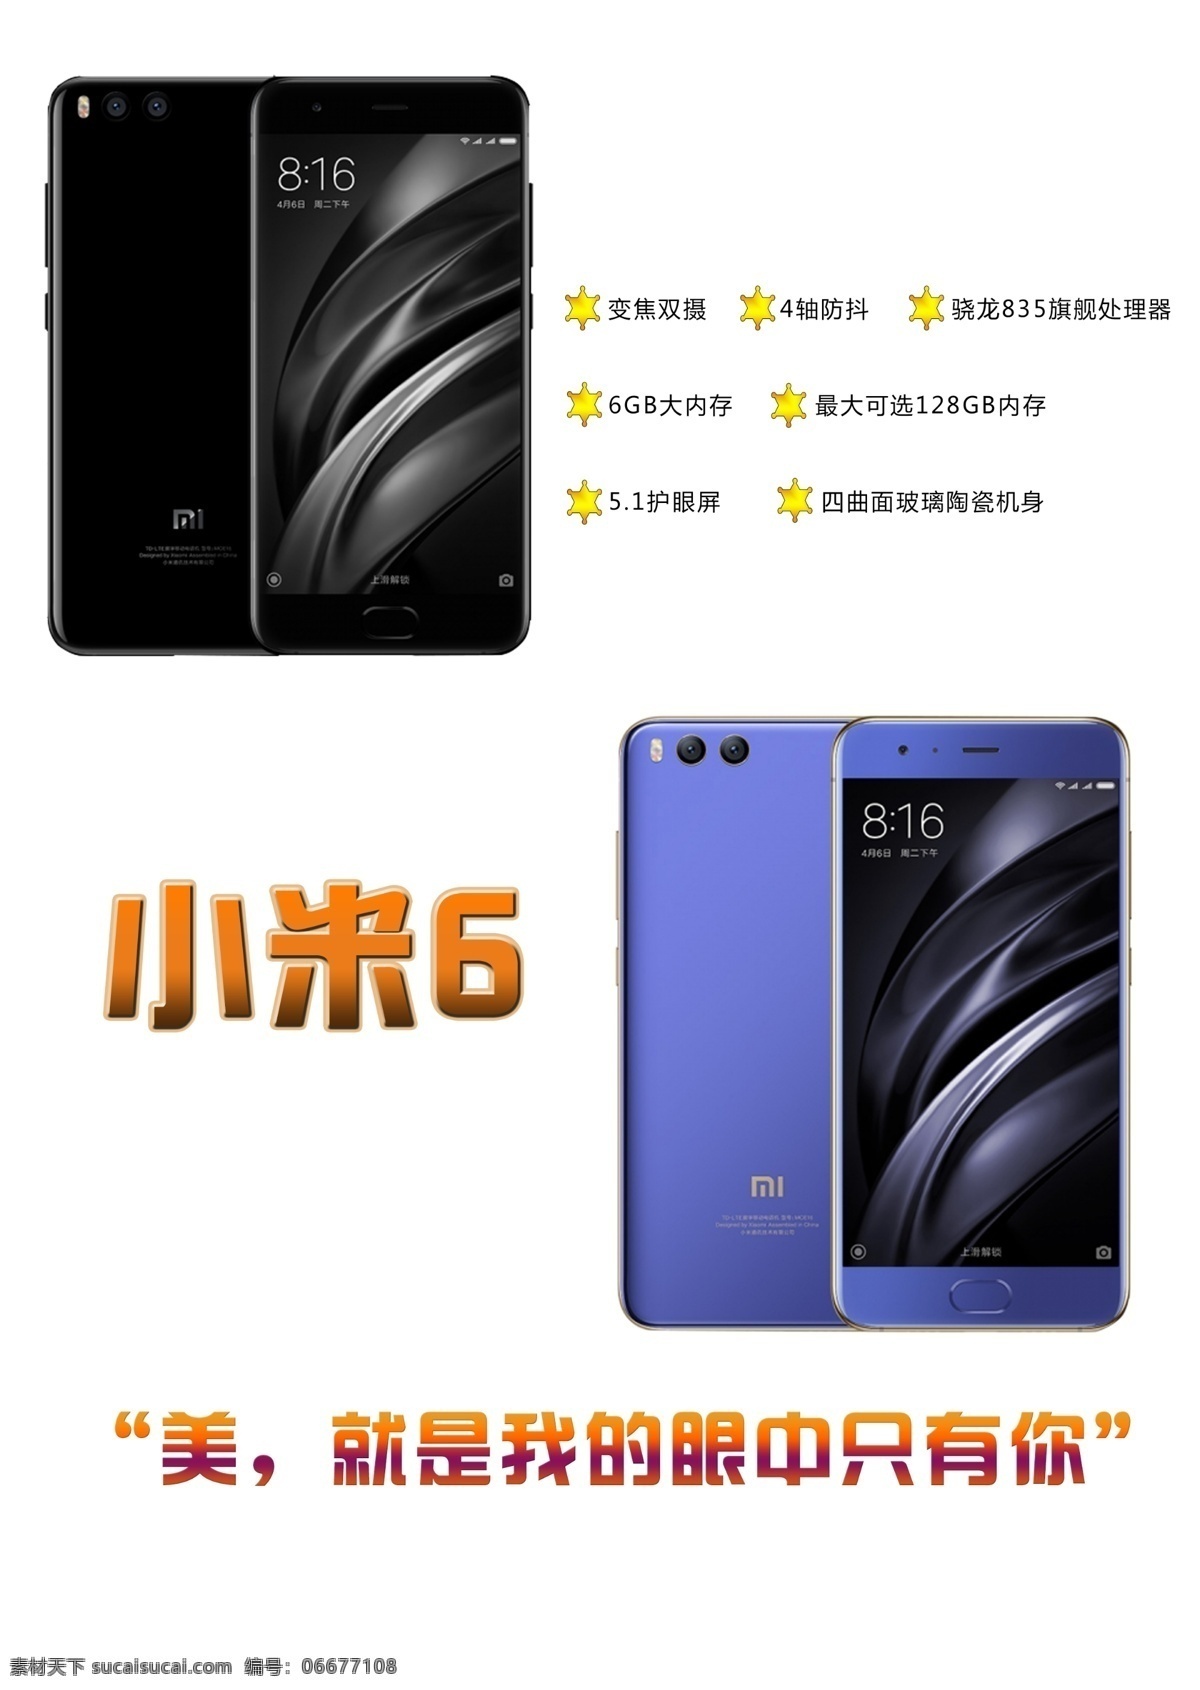 小米手机 小米6背板 小米6 新品 最新产品 背板 海报 广告